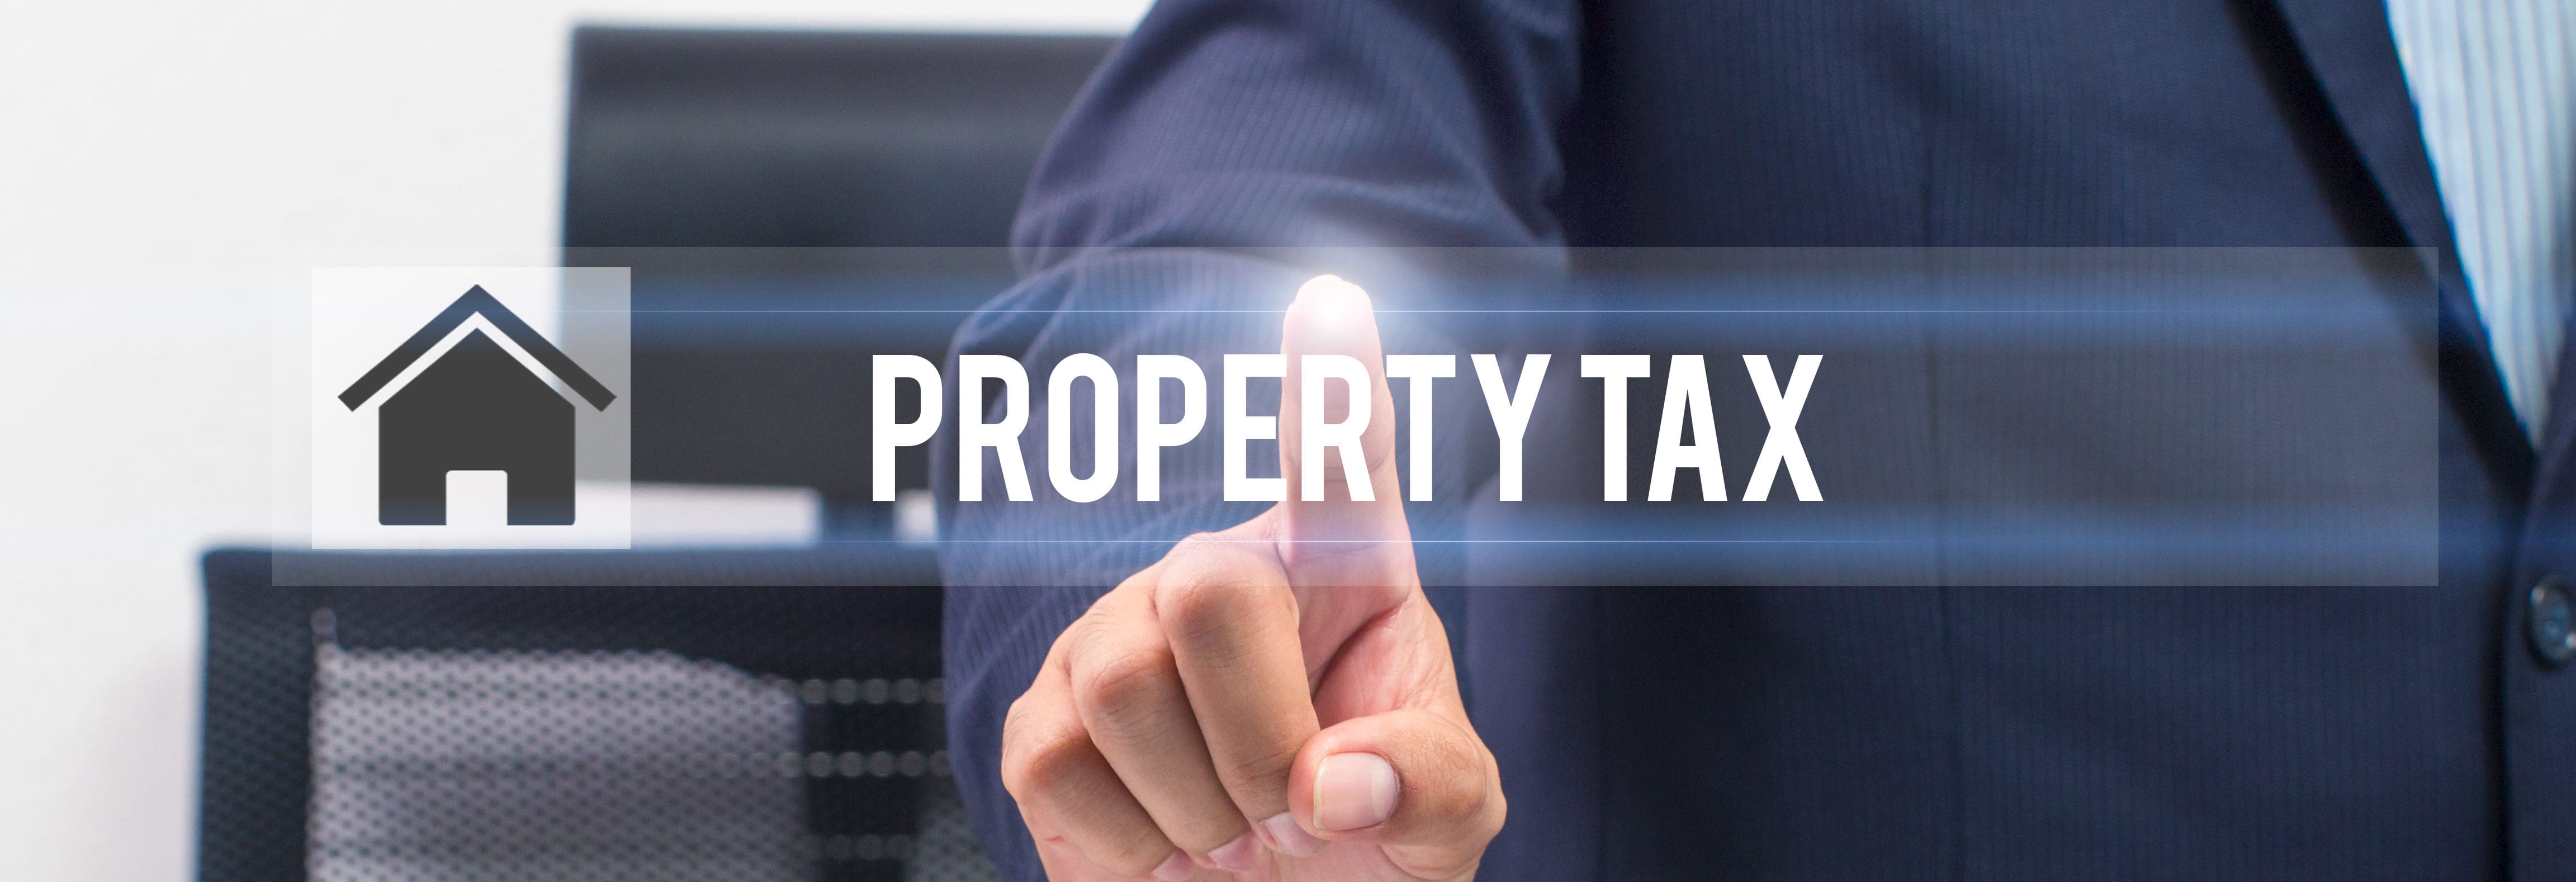 Top 10 Property Tax Myths